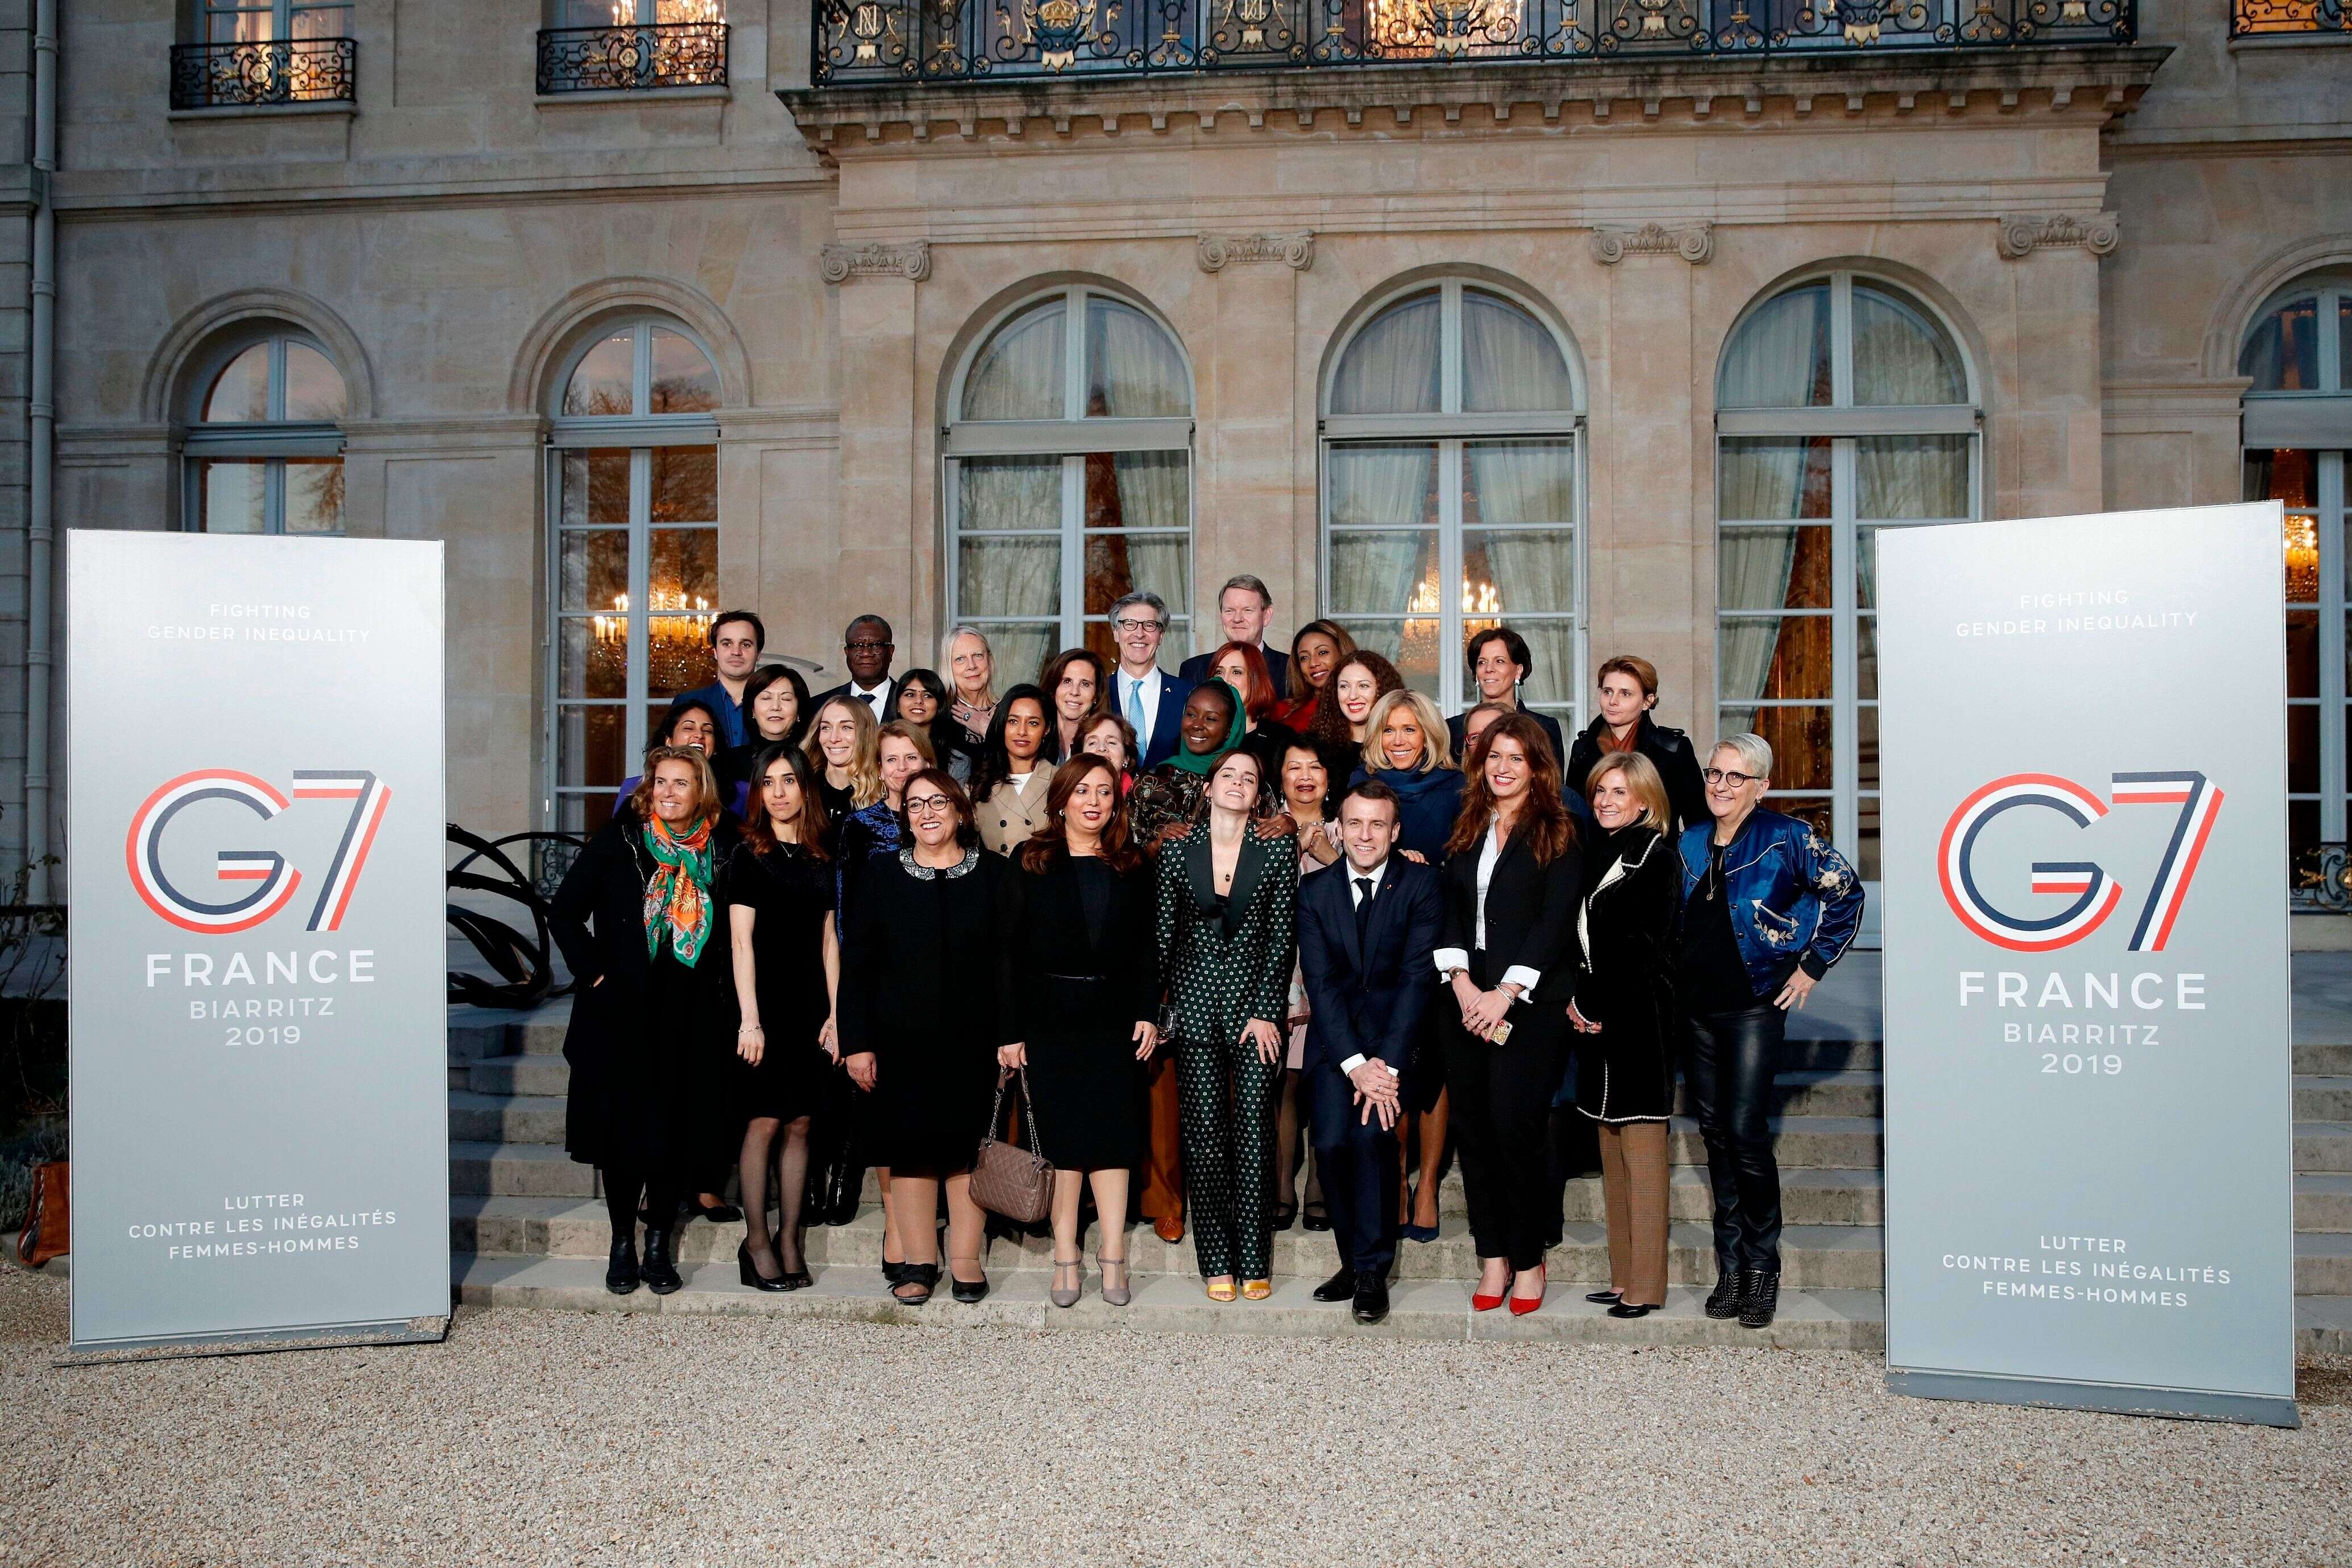 Une réunion sur l'égalité femmes-hommes en préparation du G7 (qui aura lieu en août 2019 à Biarritz), avec notamment les Prix Nobel de la Paix Nadia Murad et Denis Mukwege, ainsi que l'actrice Emma Watson, le 19 février 2019 à l'Elysée.